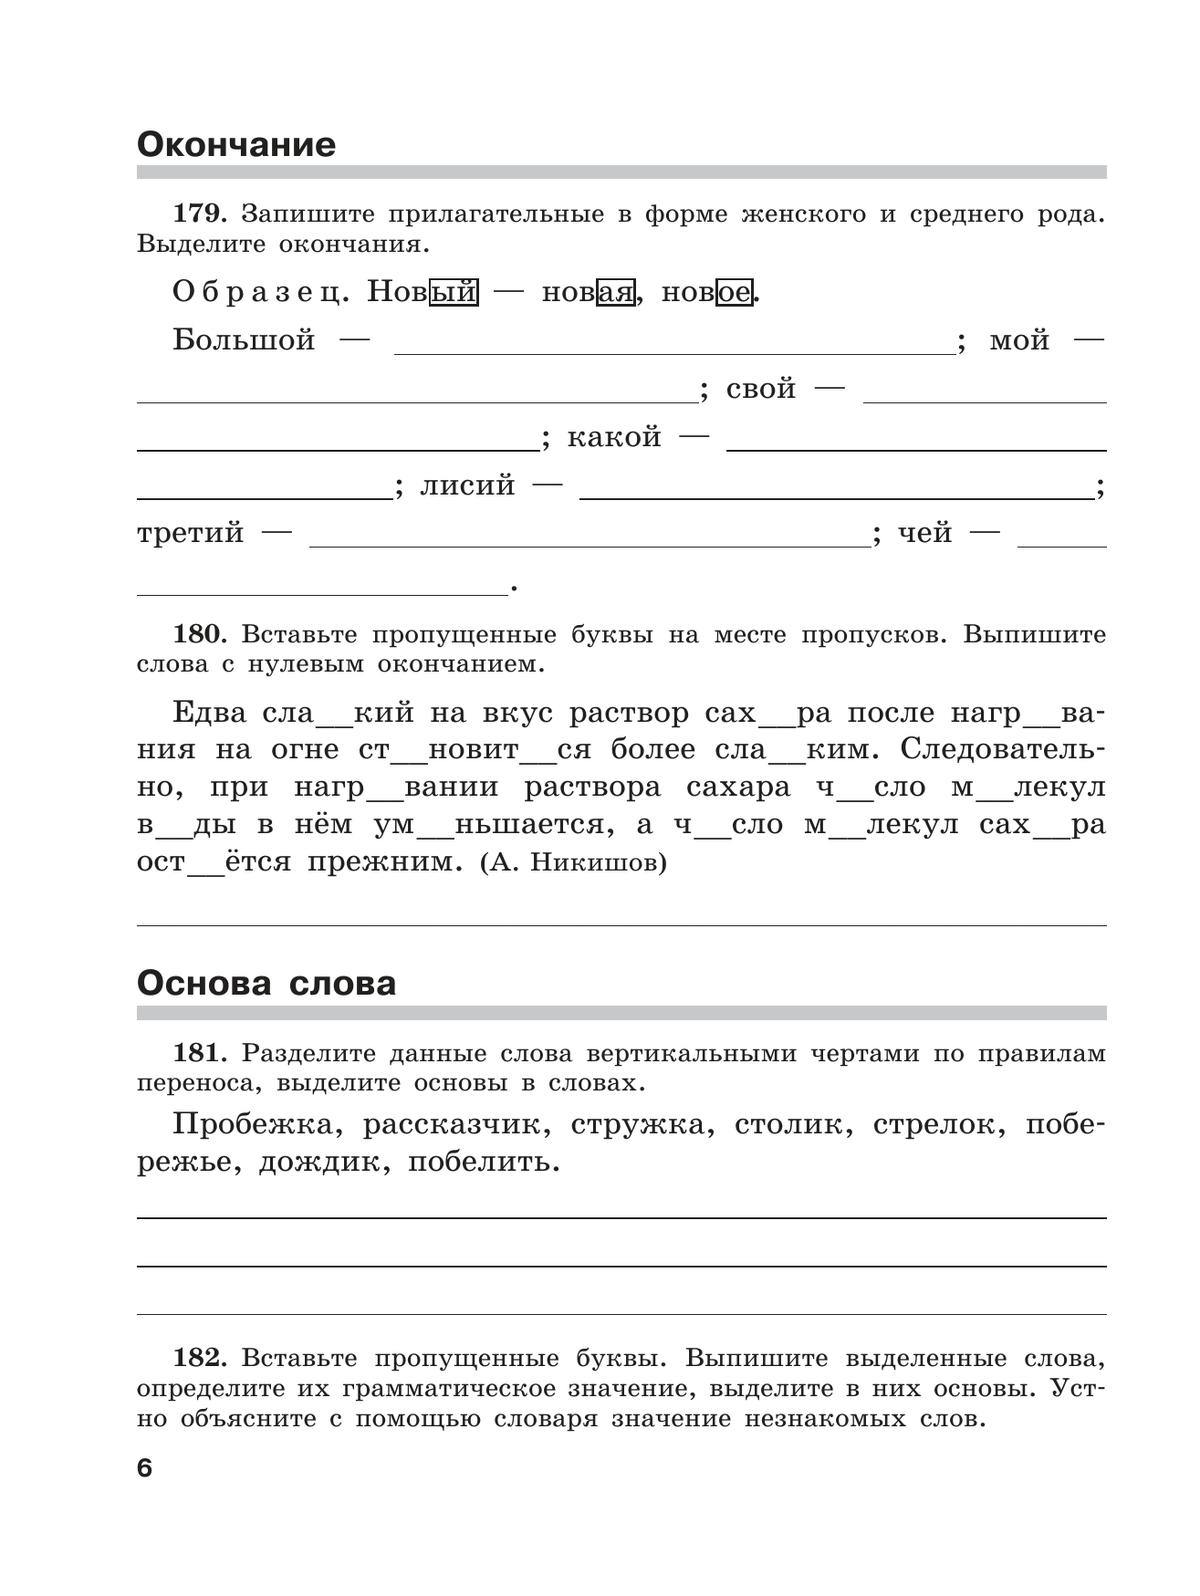 Скорая помощь по русскому языку. Рабочая тетрадь. 5 класс. В 2 ч. Часть 2 8